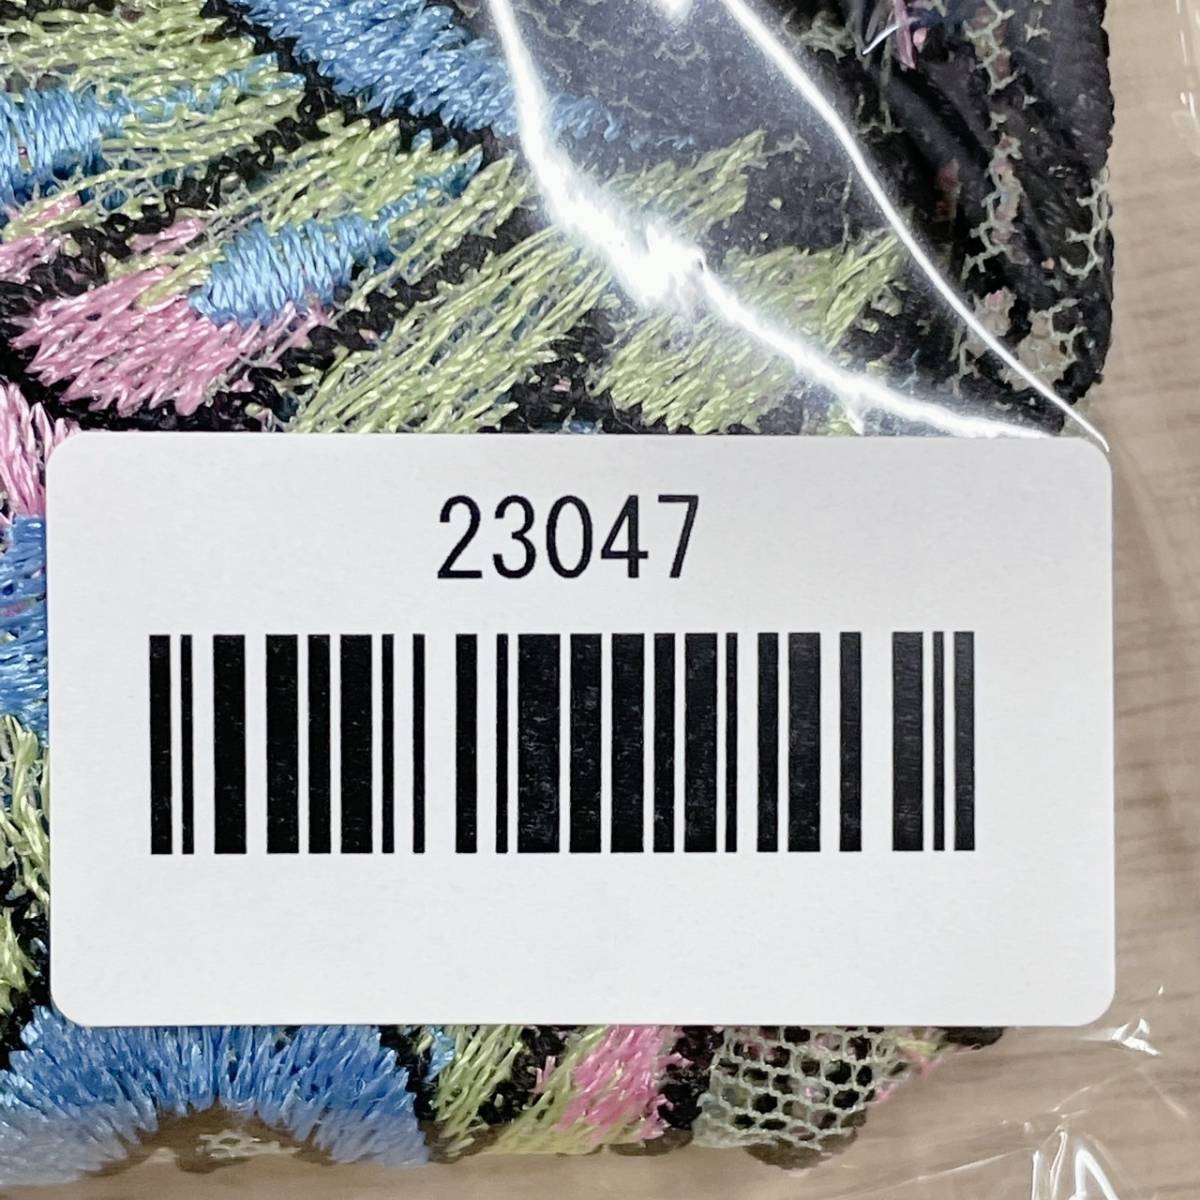 【23047】 新品 STUDIO FIVE スタディオファイブ キャミソール キャミ 新品未使用 パピヨン 78シリーズ バスト85 カラフル LG 上品 刺繍